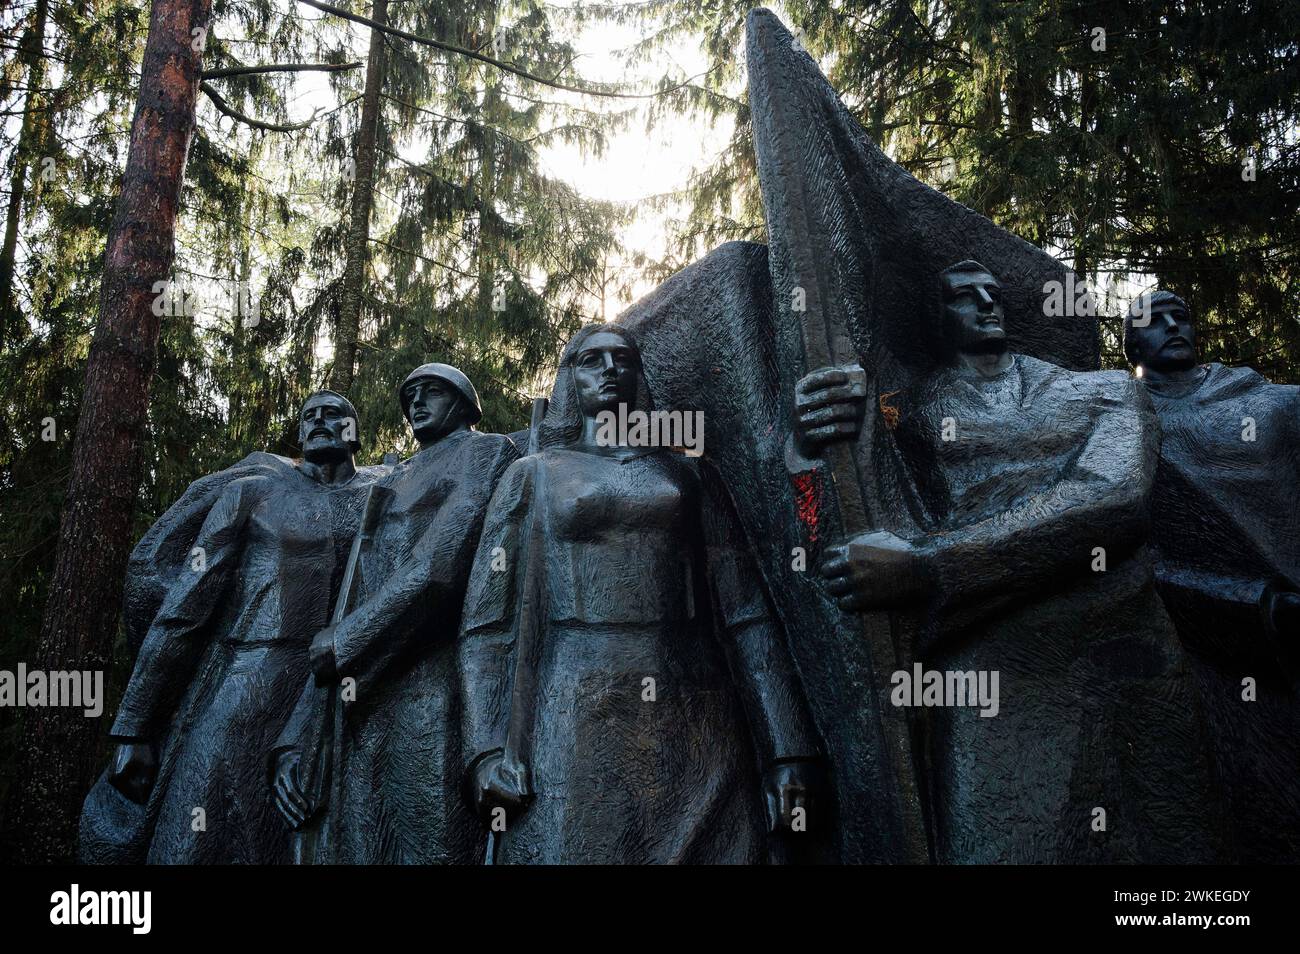 © Jan Schmidt-Whitley/Le Pictorium/MAXPPP - Druskininkai 19/02/2024 Jan Schmidt-Whitley/Le Pictorium - 19/02/2024 - lituanie/les pays baltes/Druskininkai - En statues sovietiques glorifiant le combat des soldats de l'armee rouge deplace dans le parc. Le parc Grutas est un musee de plein air presentant une collection de statues et d'autres objets emblematiques de l'ere sovietique. Il a ete fonde en 2001 a environ 130 km au sud-ouest de Vilnius. - Valeurs Actuelles out, no jdd, jdd out, RUSSIA OUT, NO RUSSIA #norussia/19/02/2024 - lithuania/Baltic countries/Druskininkai - So Stock Photo